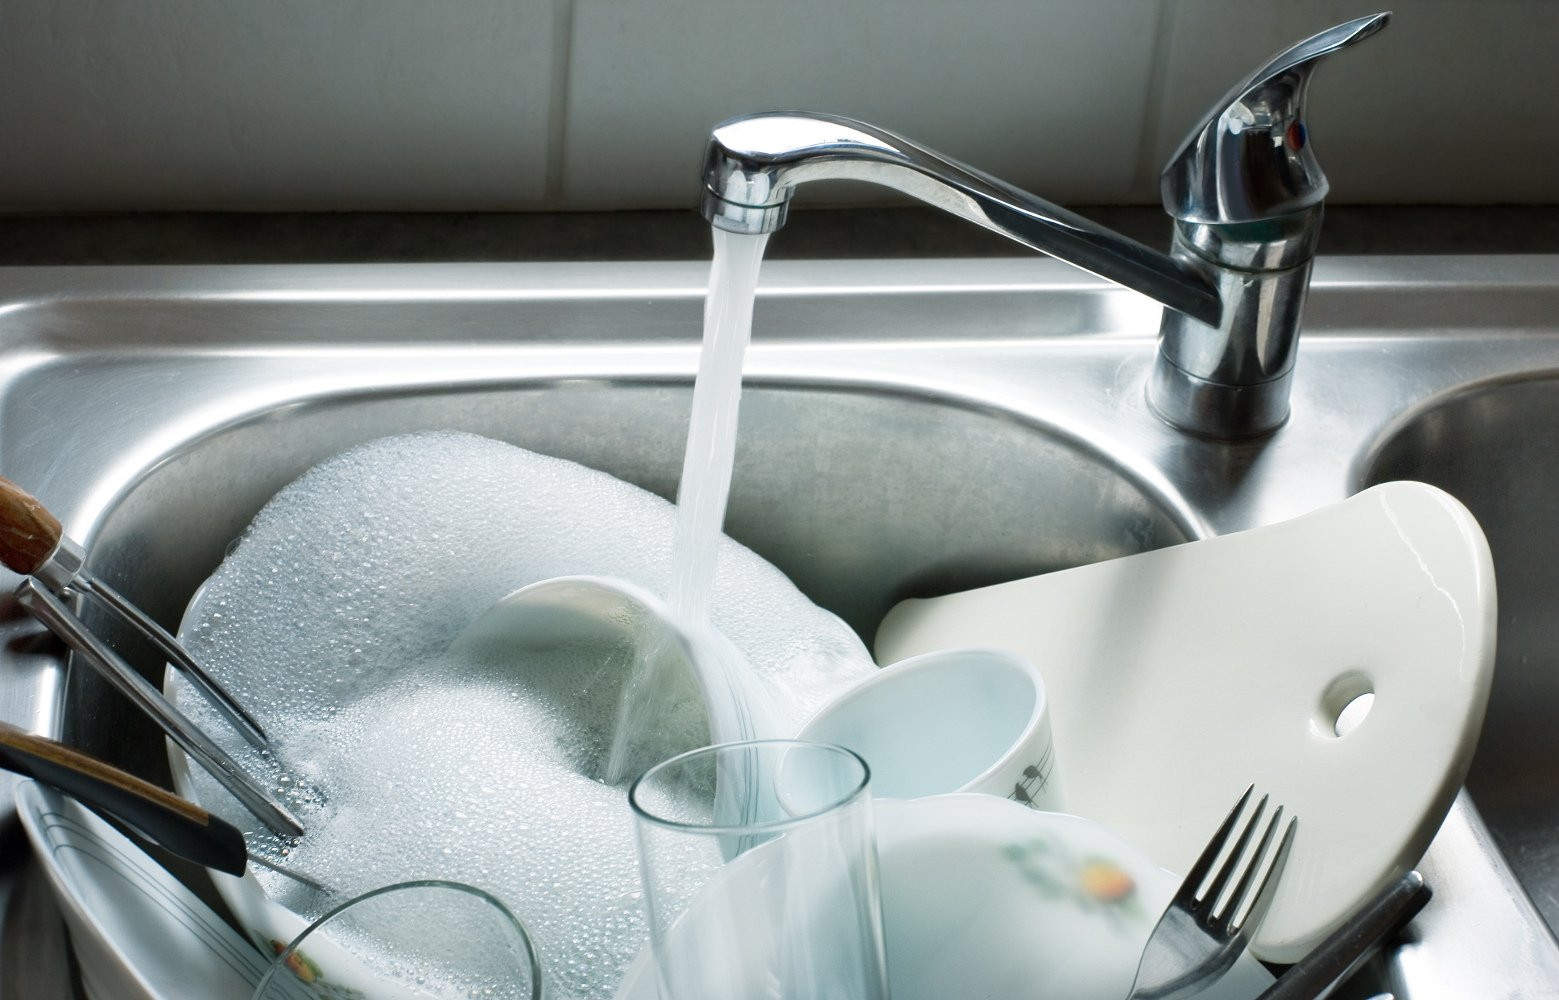 Bị ngâm lâu trong nước rửa bát khiến bát đũa nhanh hỏng và tăng sinh vi khuẩn, chất độc gây hại